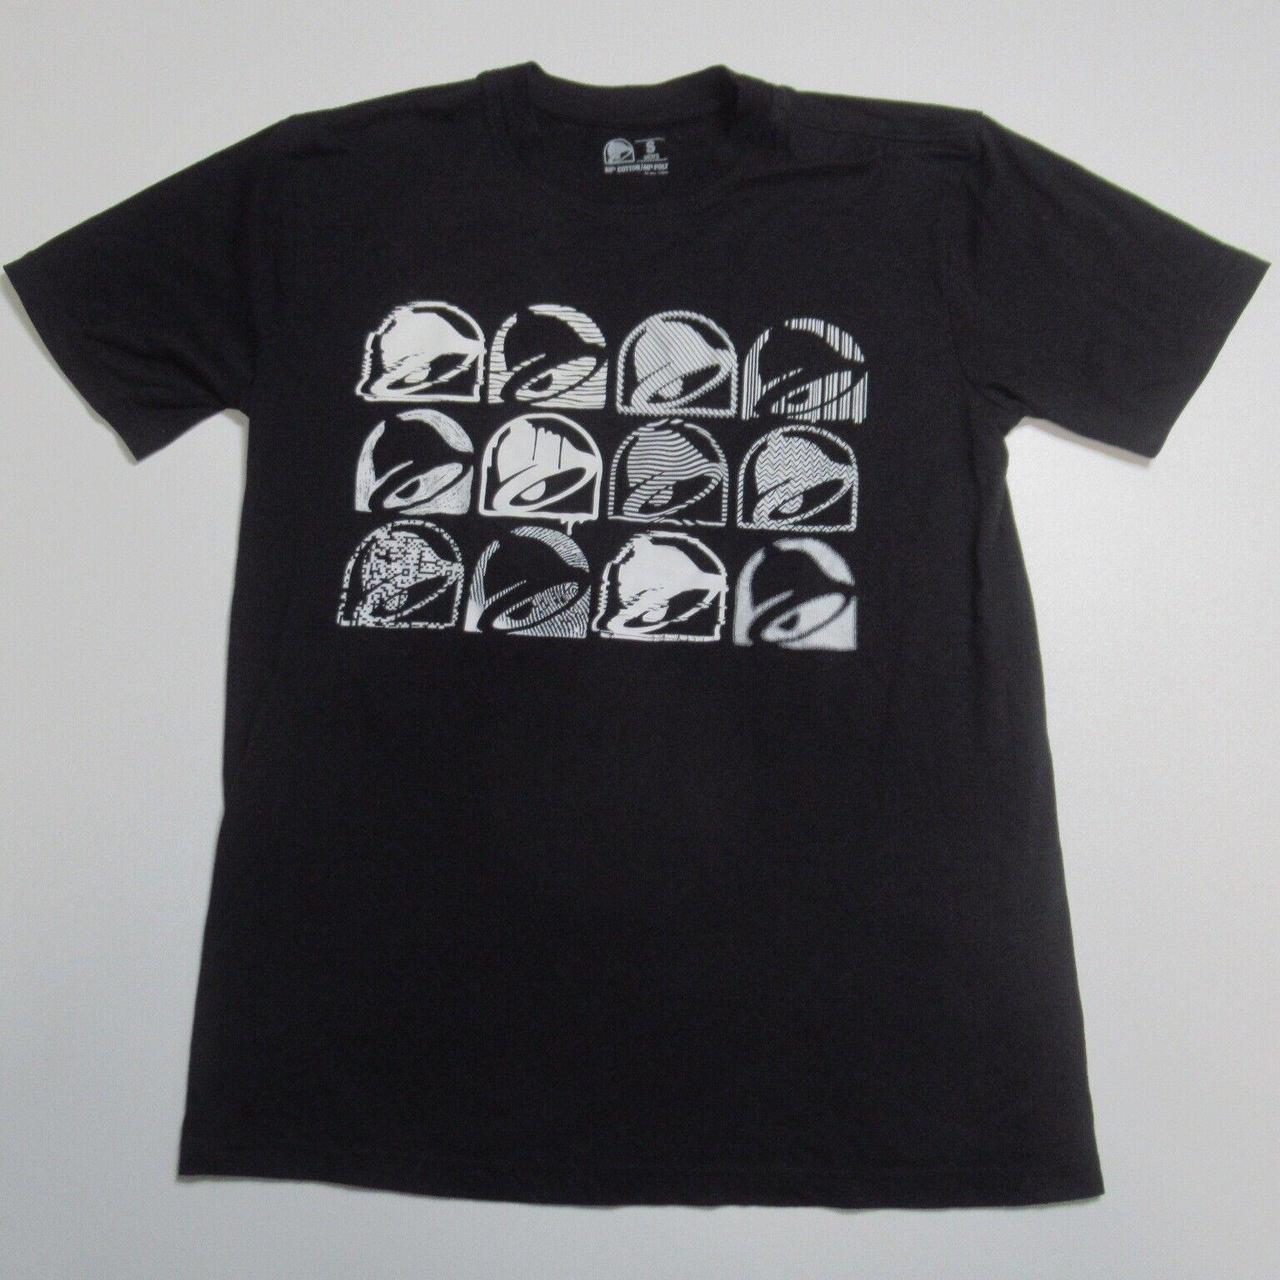 Bell Men's White and Black T-shirt (2)